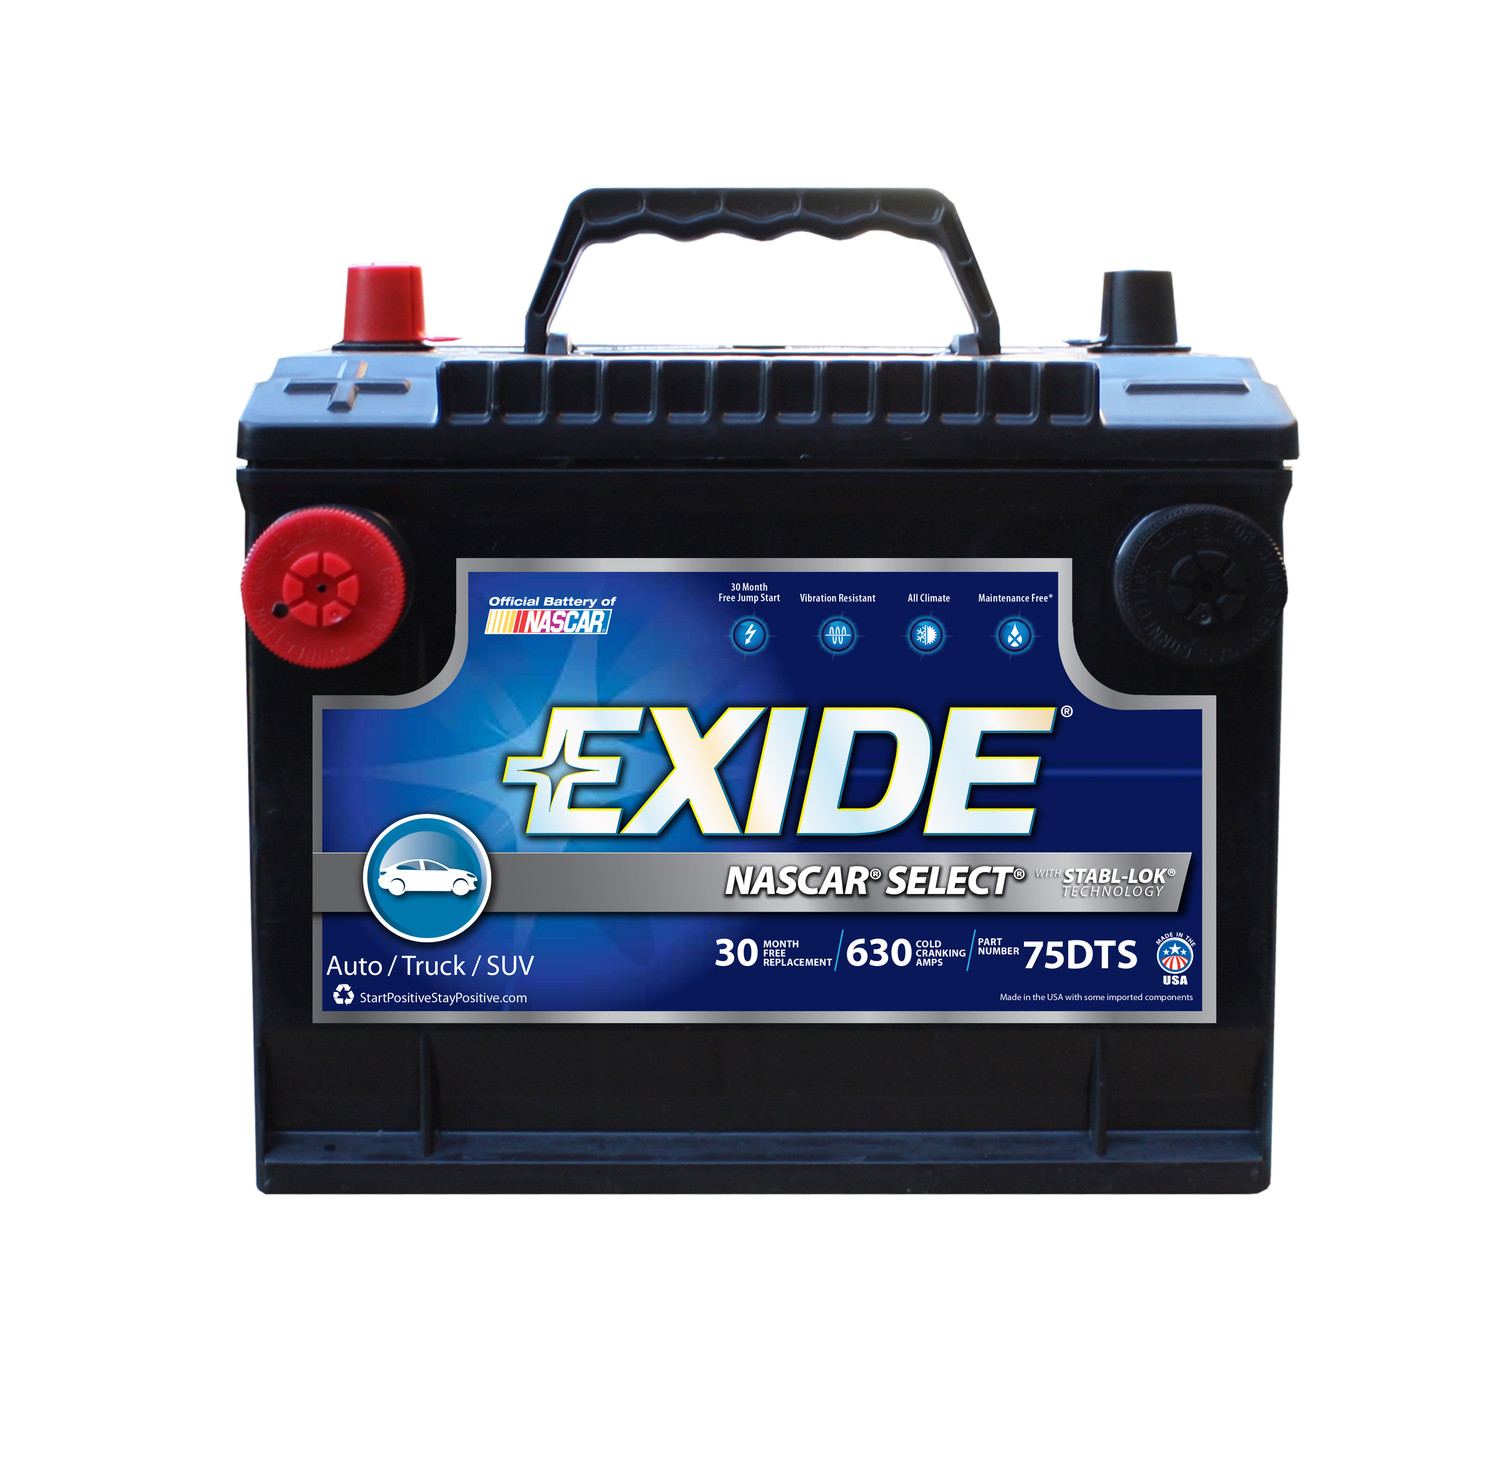 EXIDE Std Automotive Battery 75DTS | AutoPartMonster.com